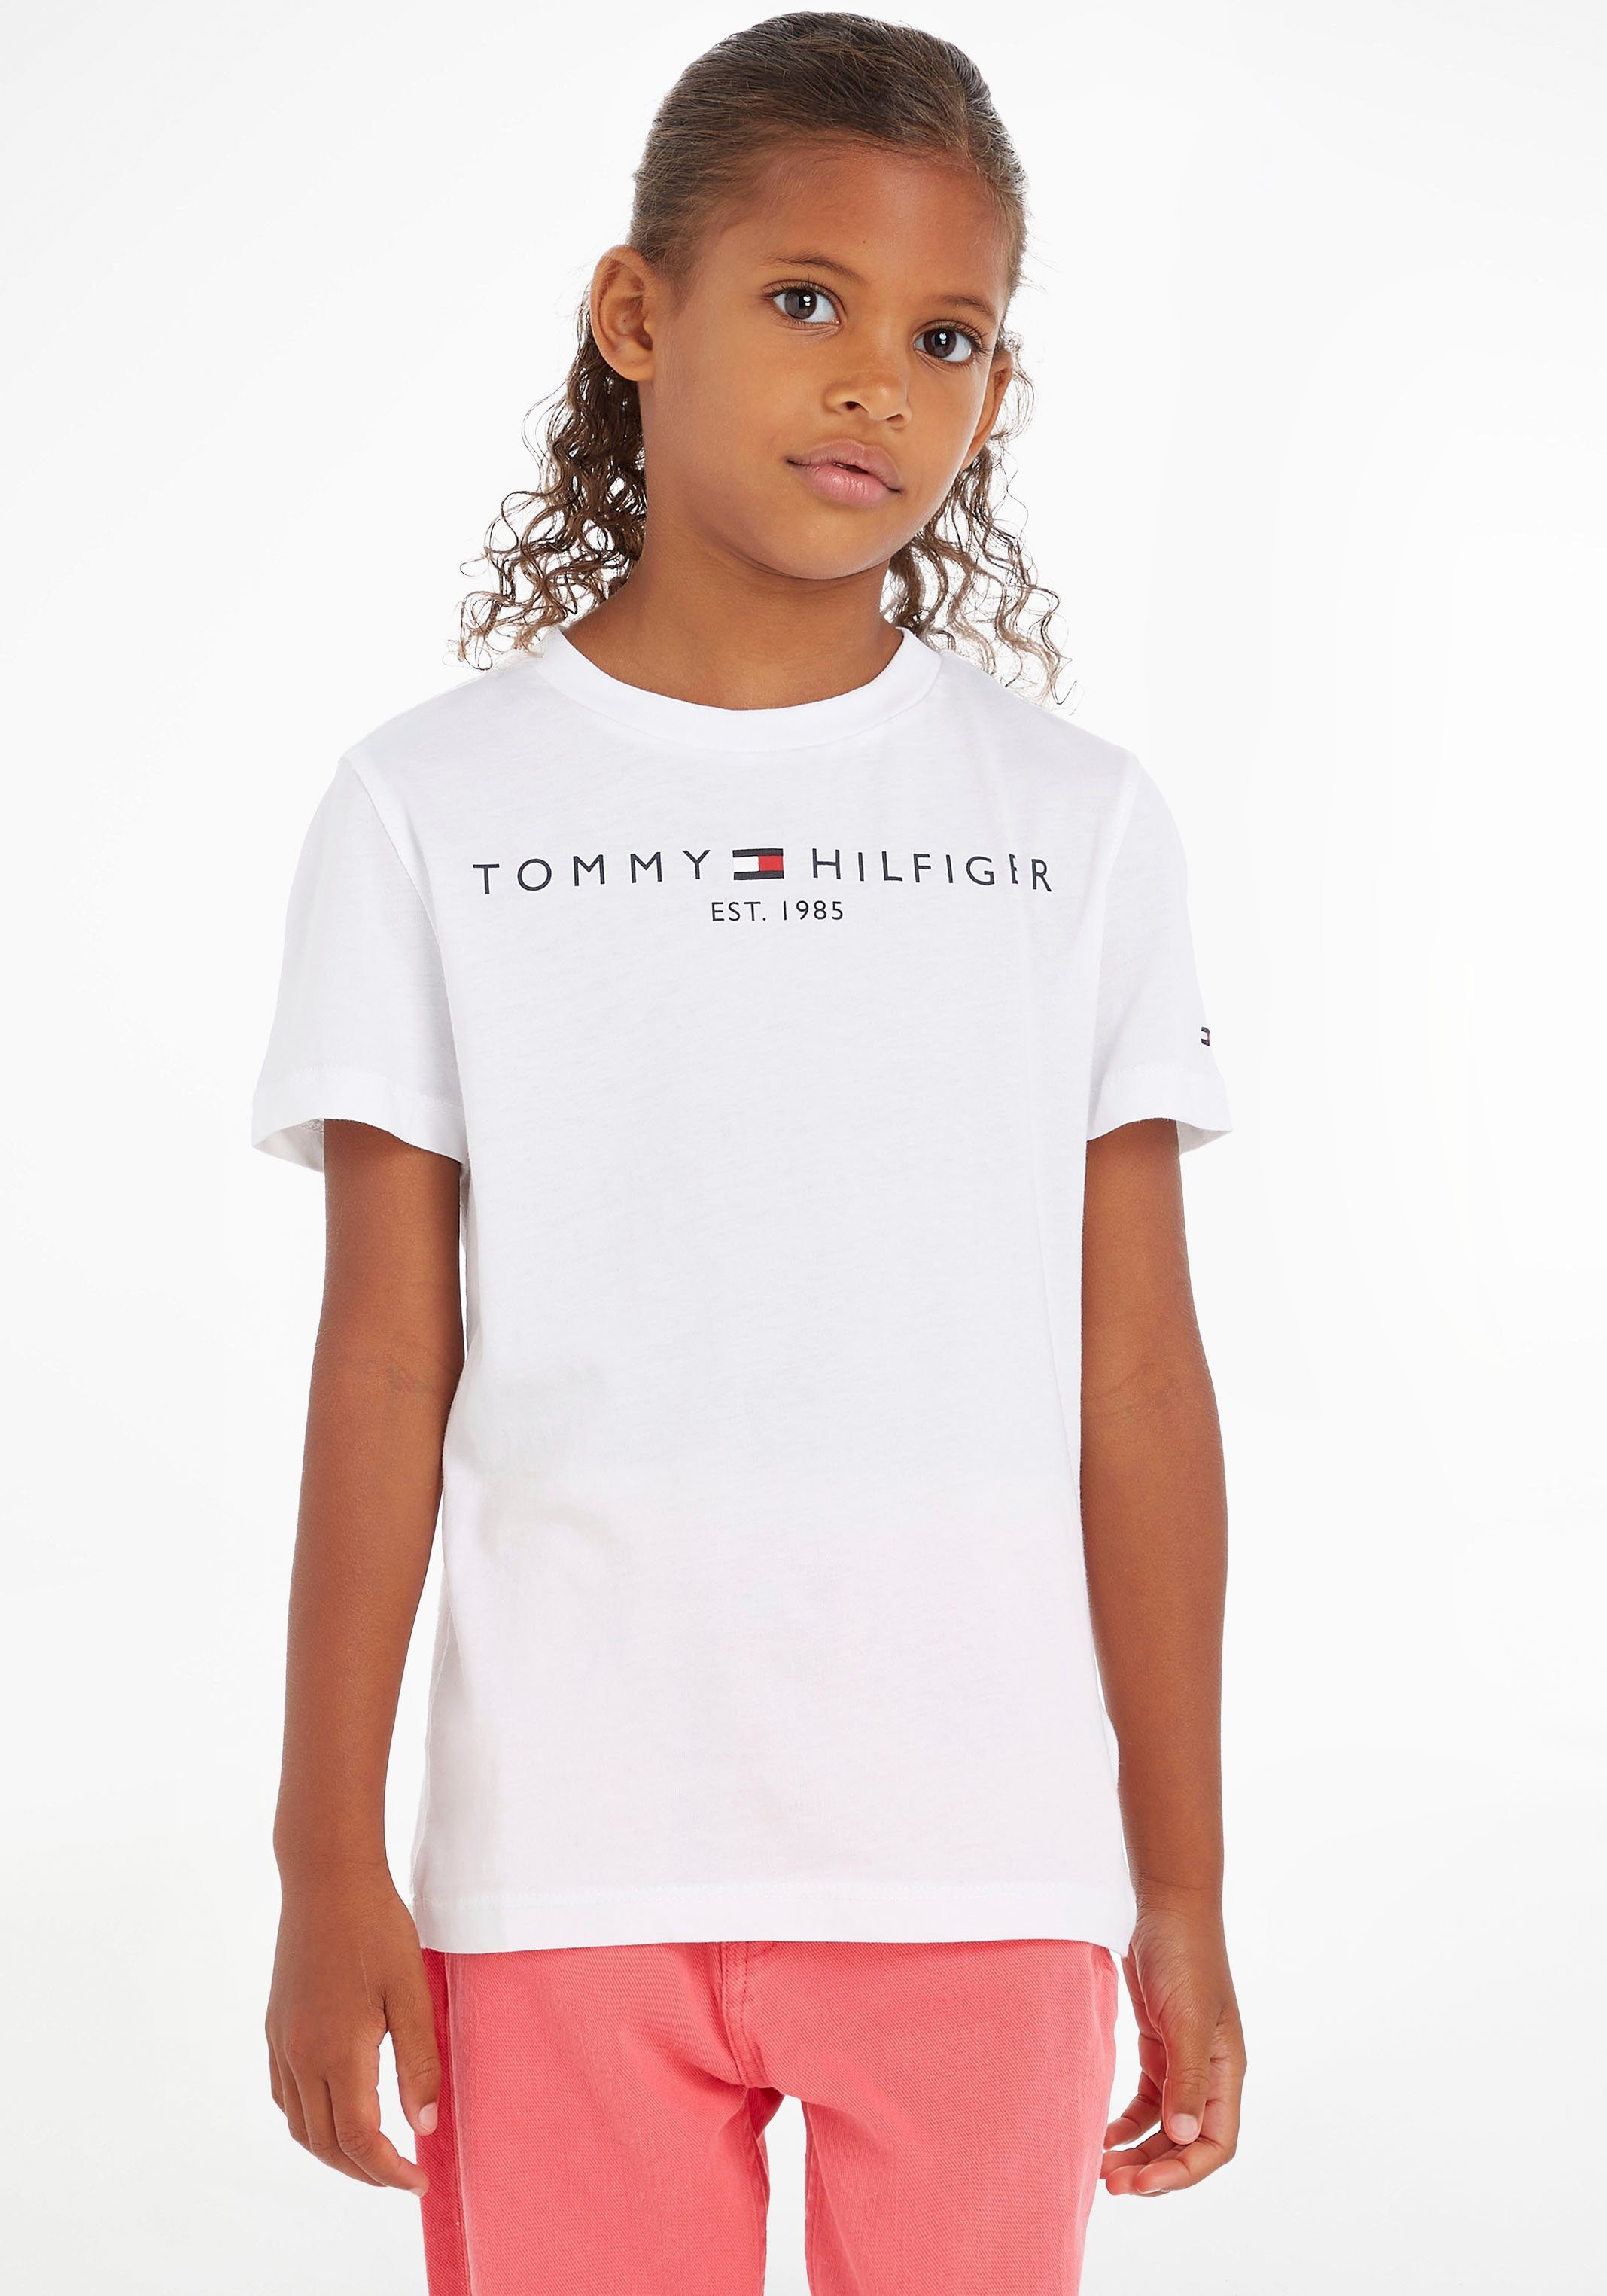 Tommy Hilfiger Jungen MiniMe,für Kinder ESSENTIAL und Kids T-Shirt TEE Junior Mädchen